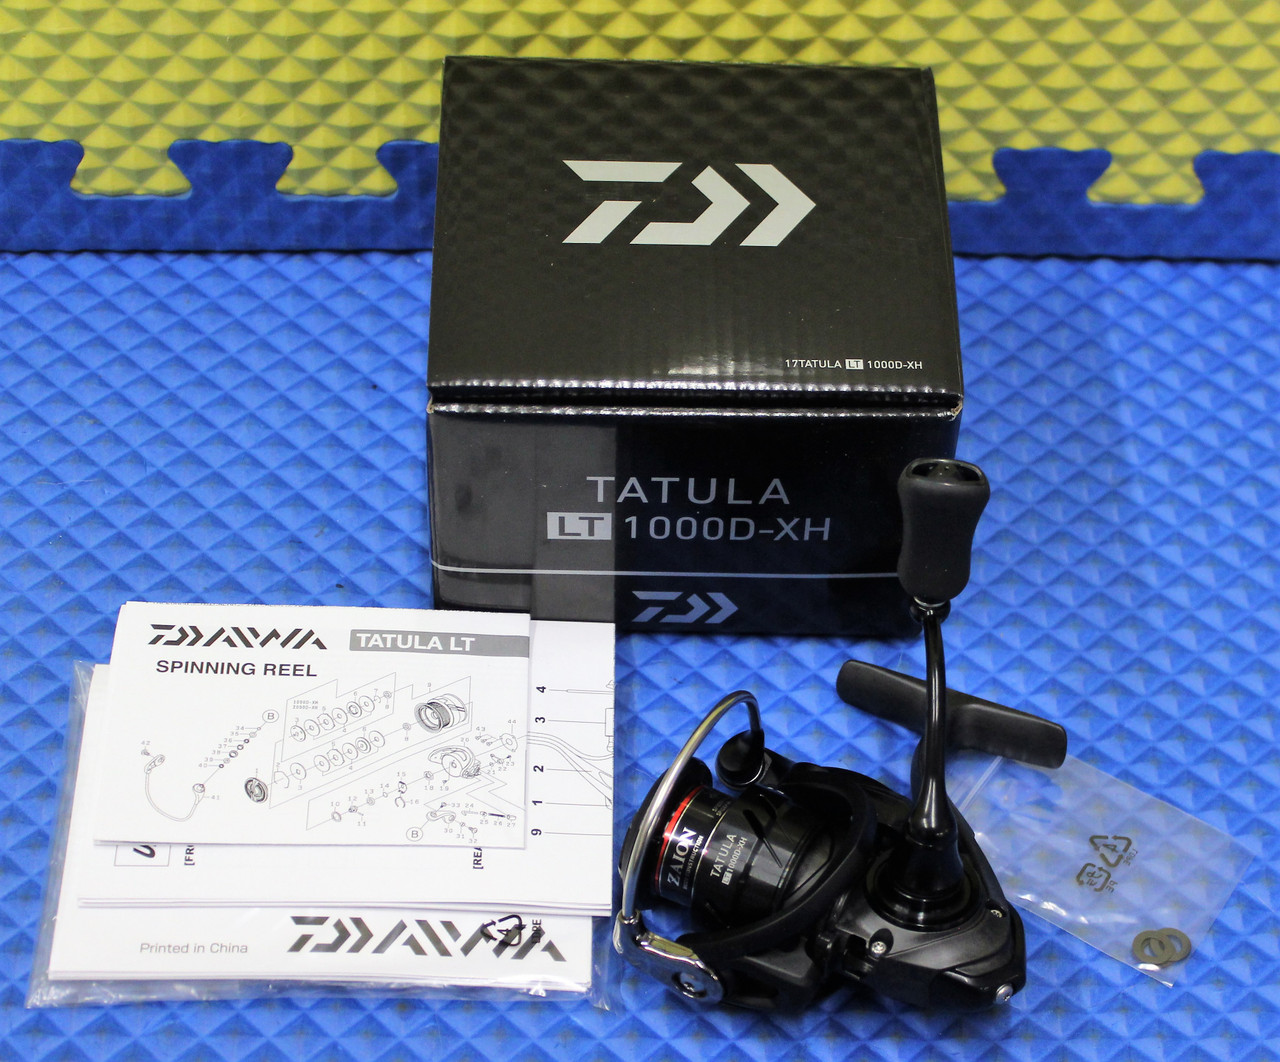 Daiwa Tatula LT Spinning Reel - Size 2500